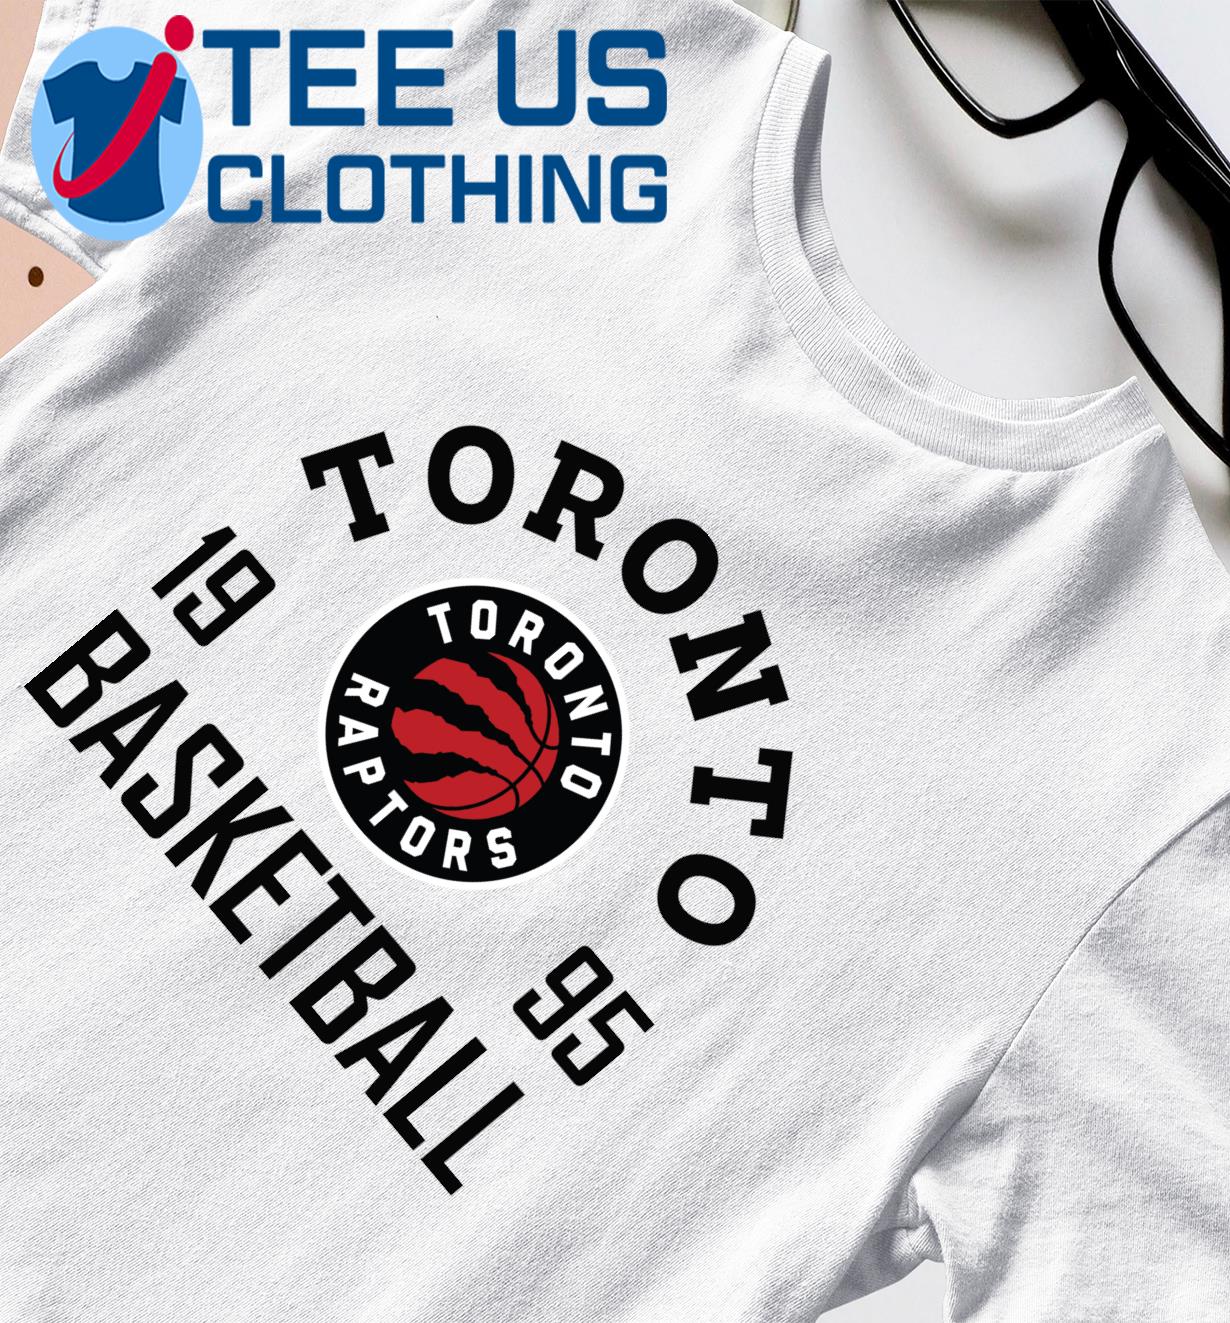 Toronto Rapptors Basketball 1995 shirt